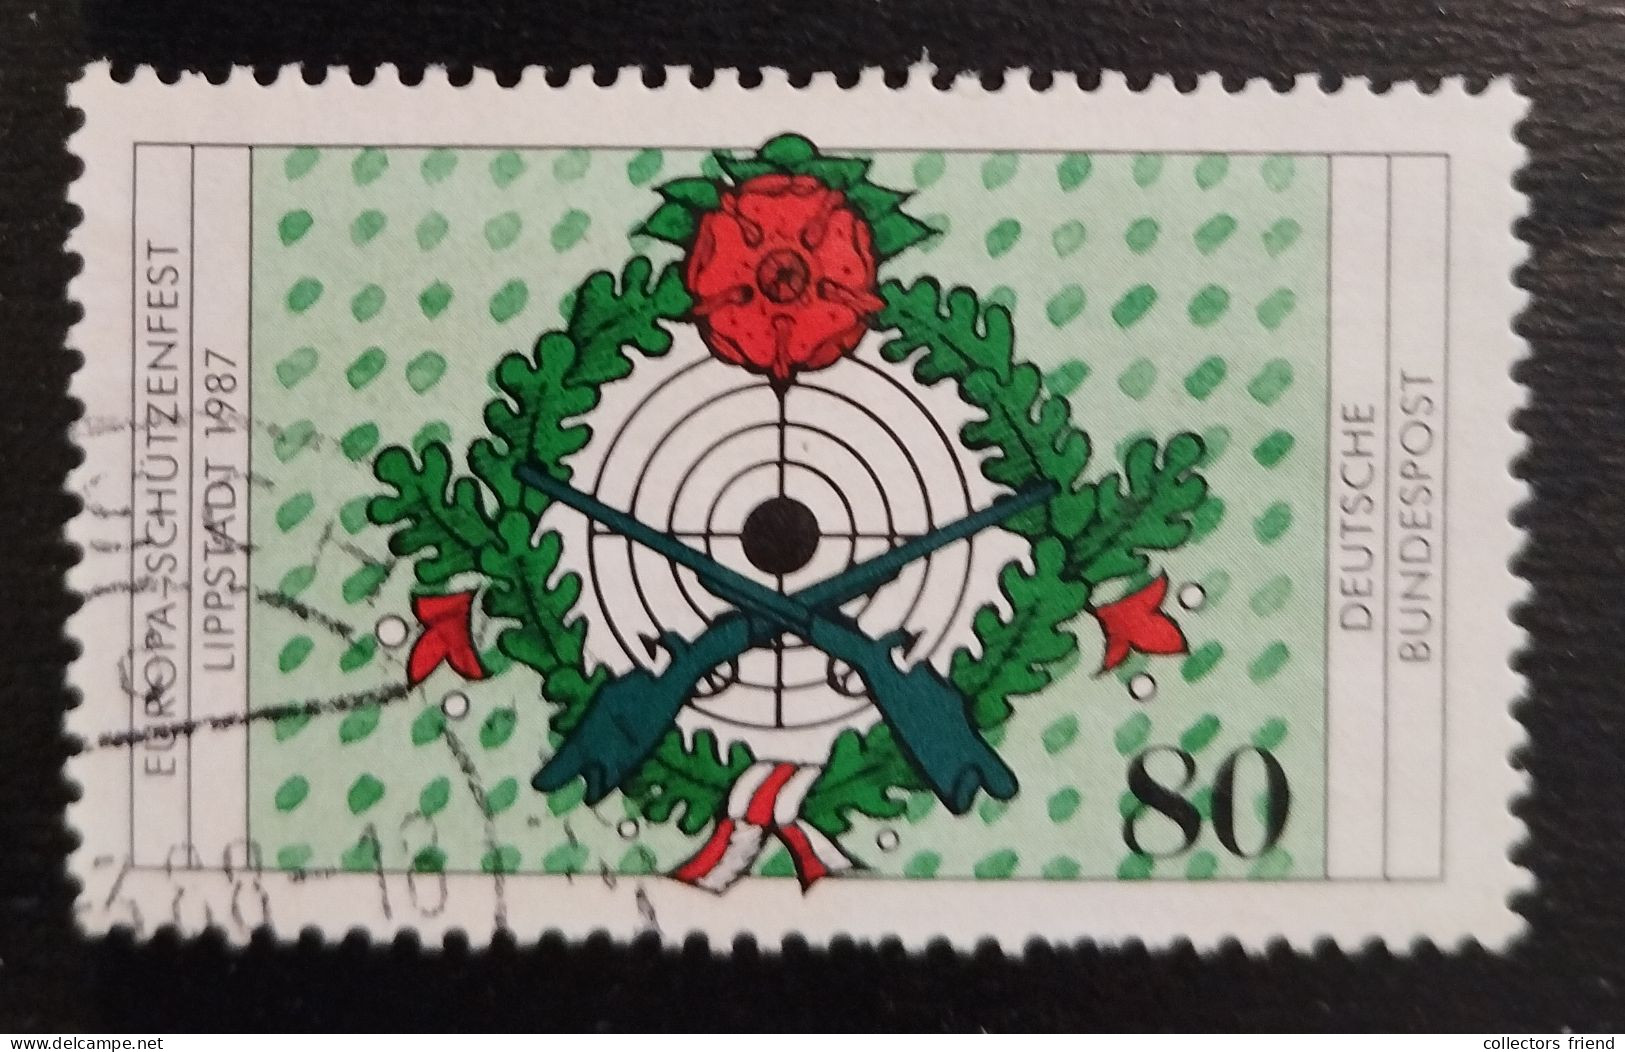 Germany - 1987 - # 1330 - Sport - Shooting - Used - Tiro (armas)